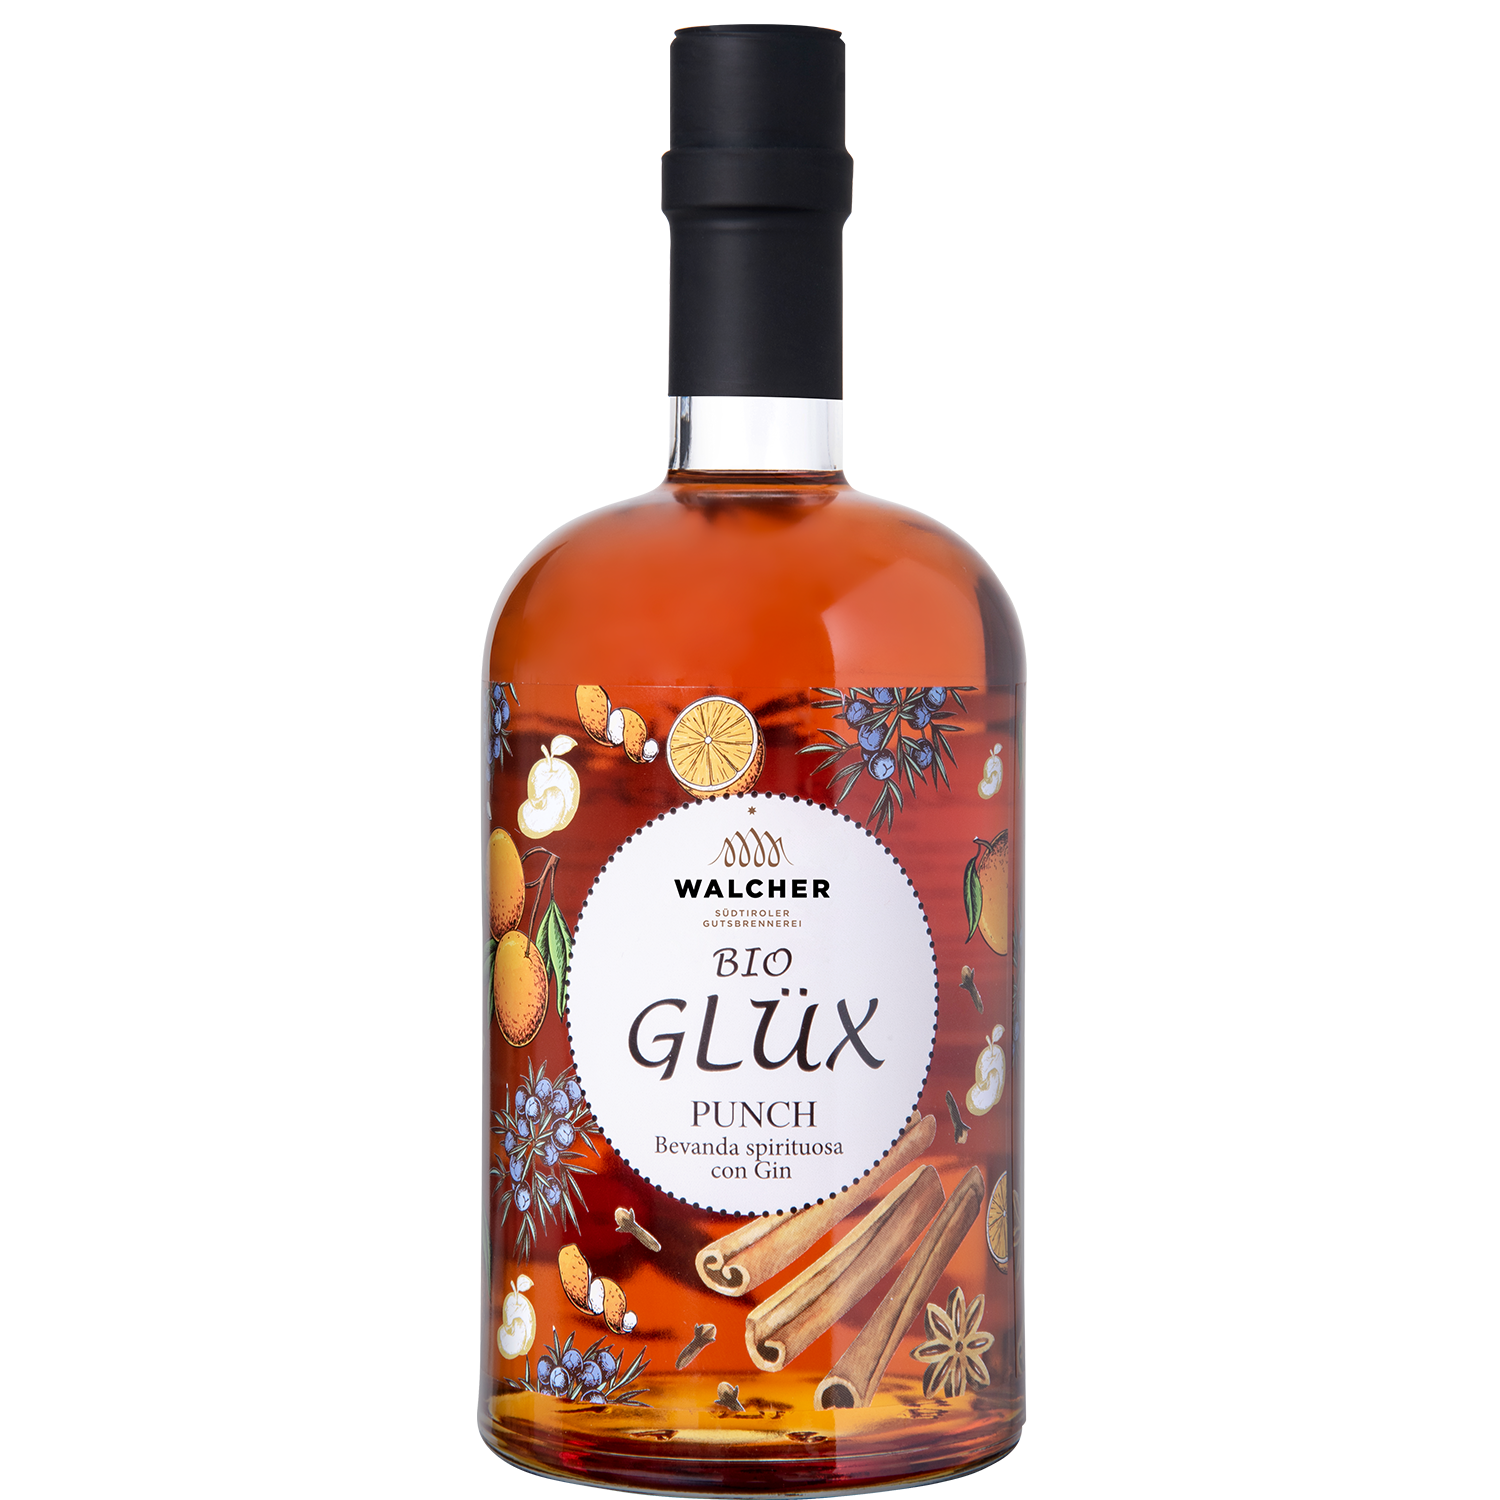 Glüx Punch with Gin in 700ml bottle by Walcher